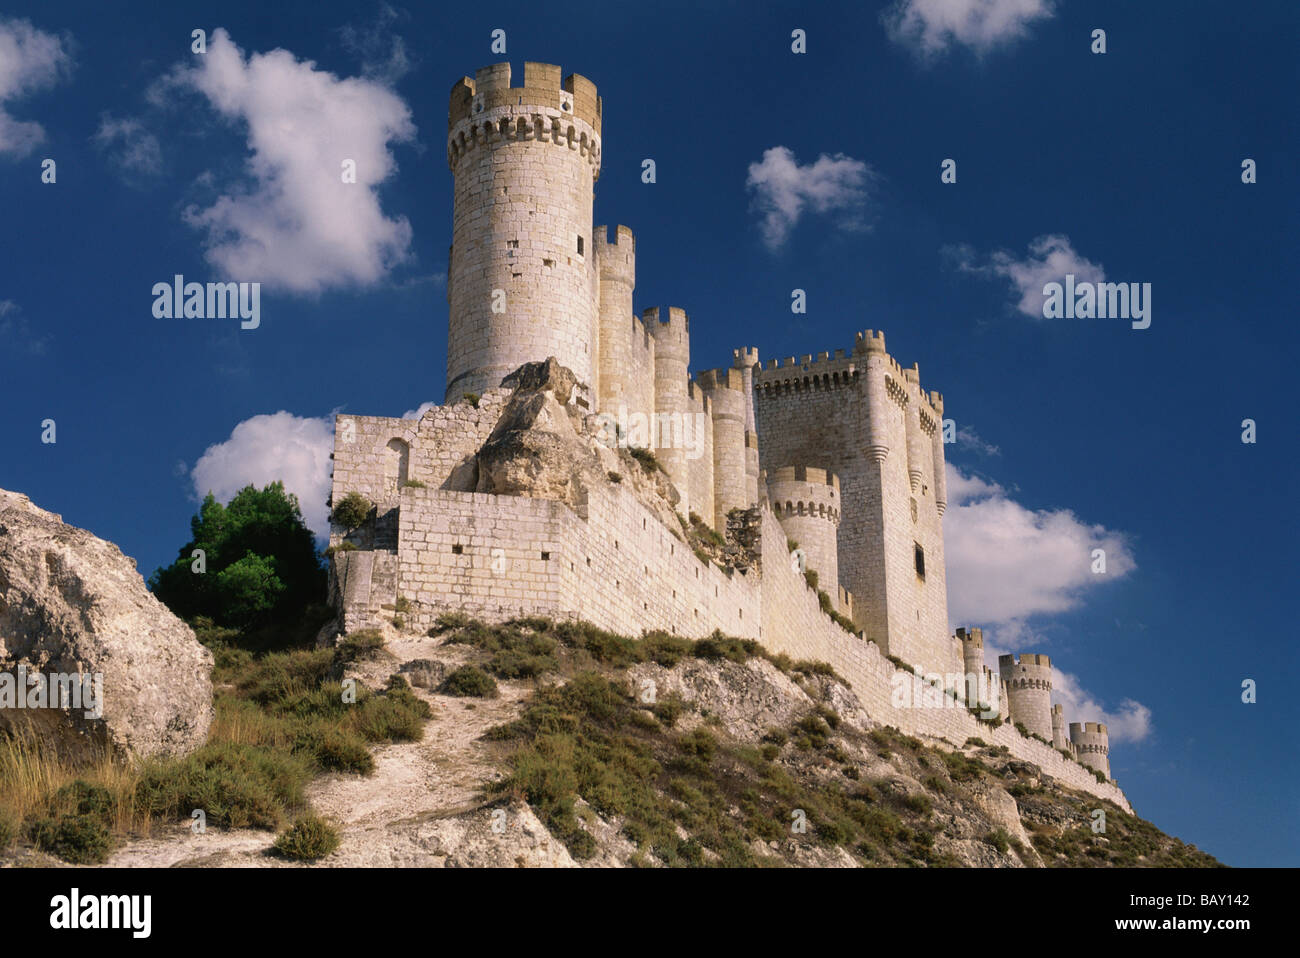 Castillo de Peñafiel castillo en la cima de una cresta rocosa contra el cielo azul, provincia de Valladolid, Castilla y León, al norte de S Foto de stock